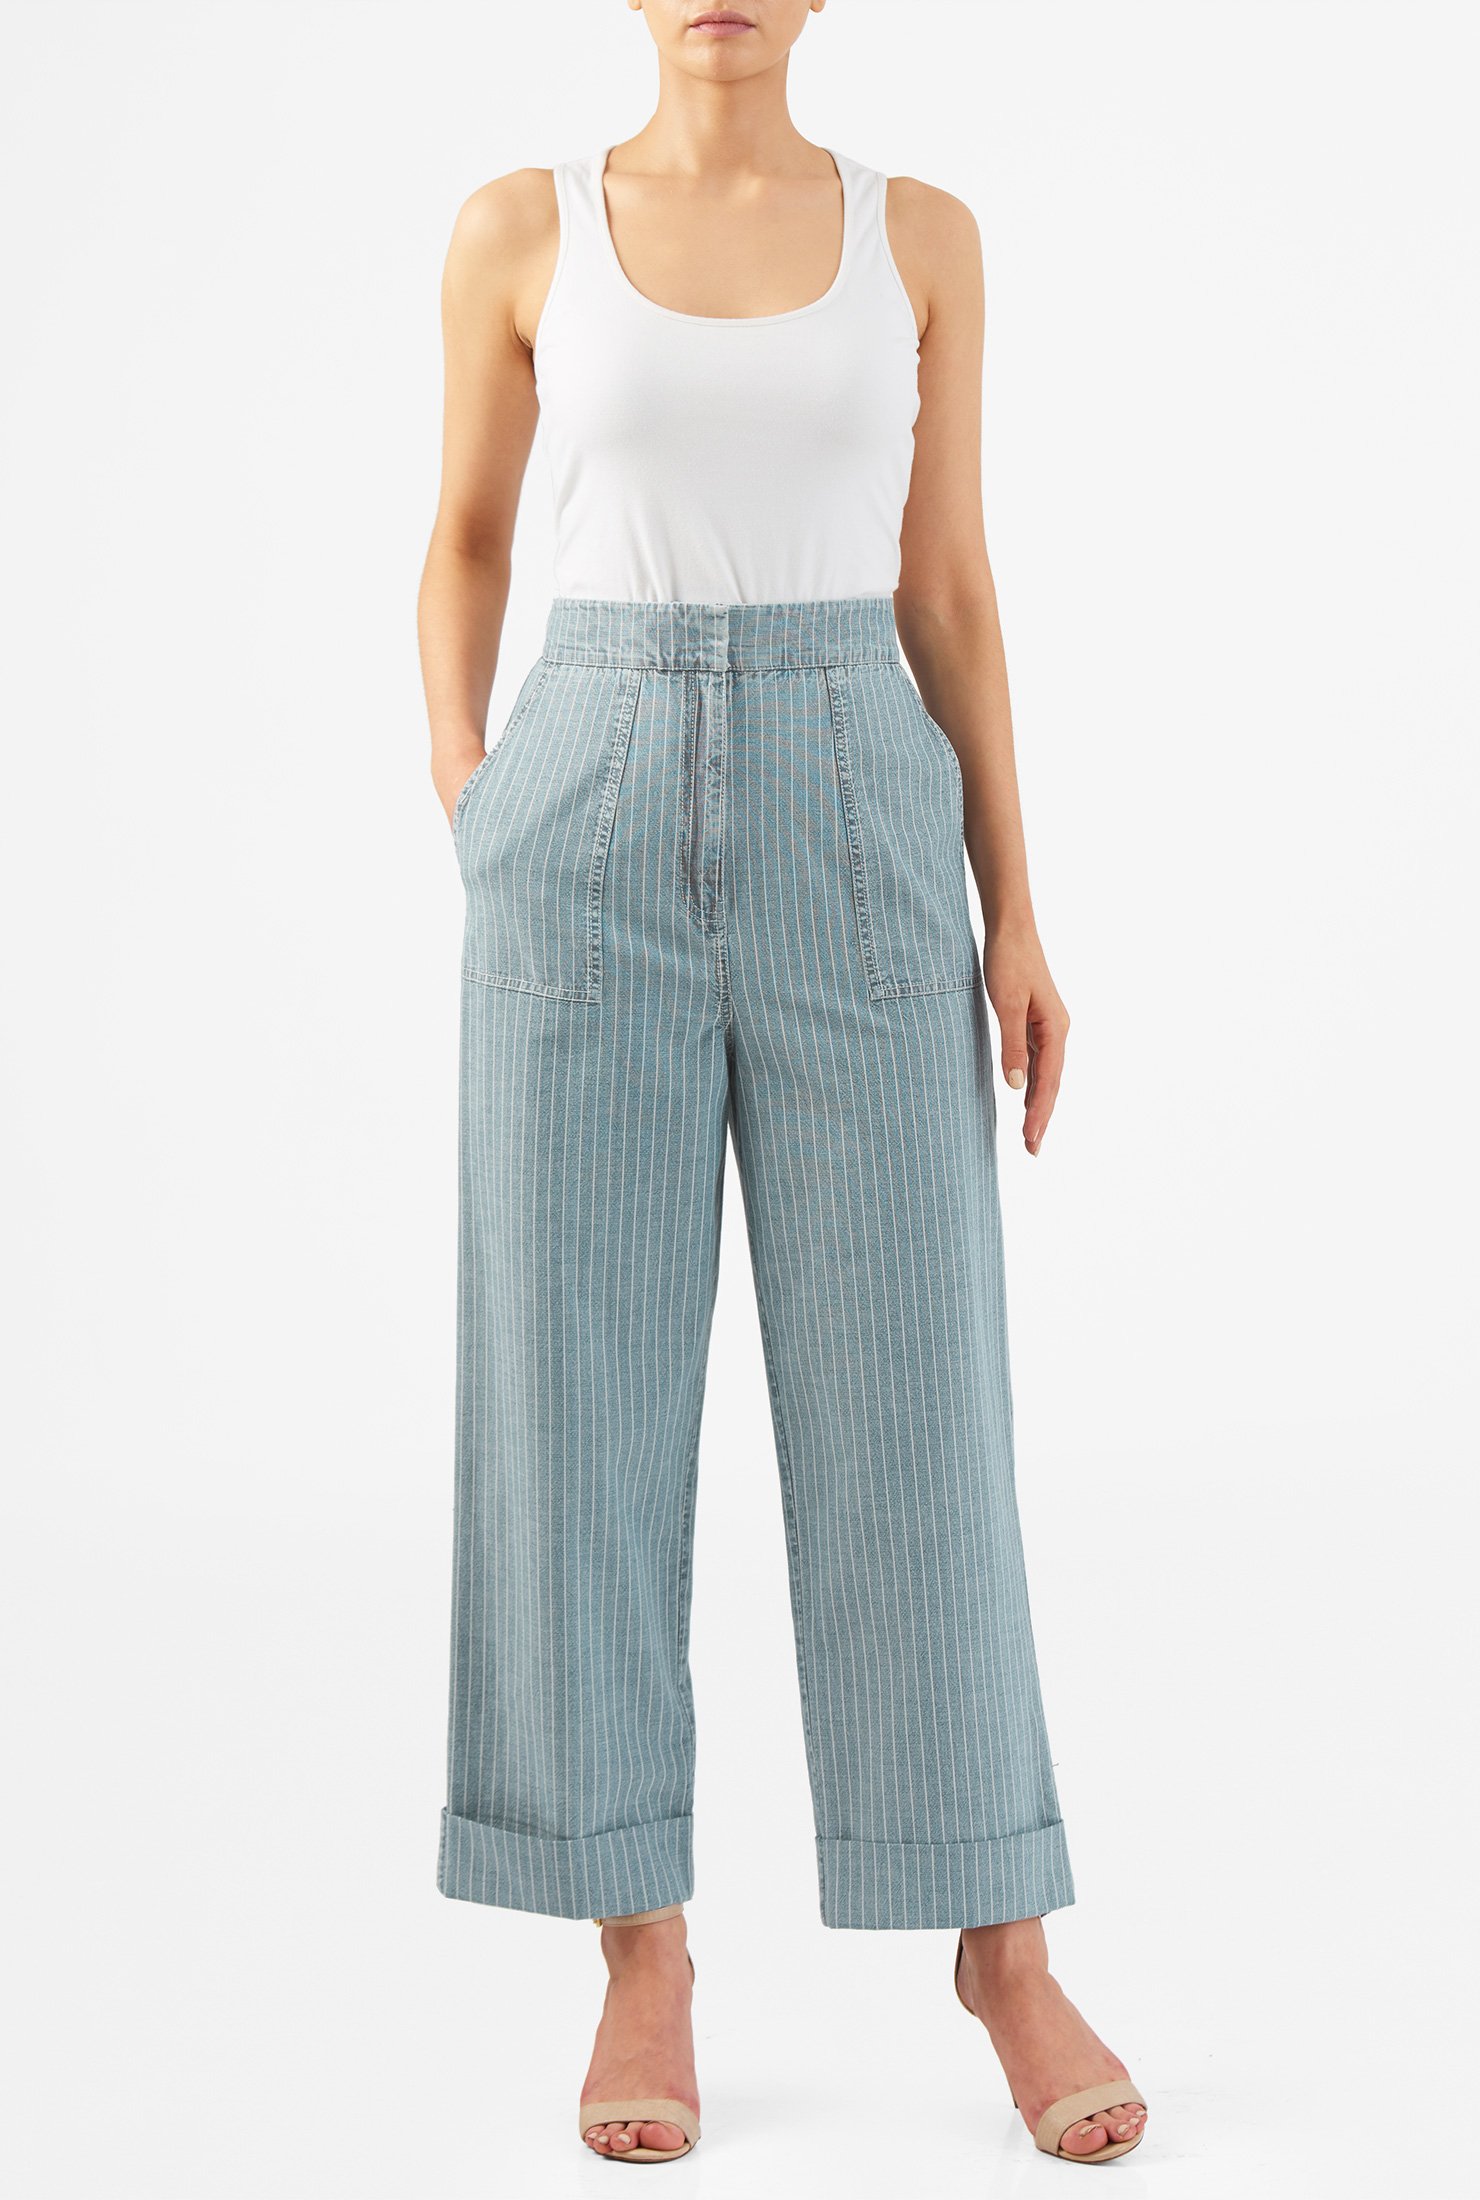 Shop High waist cotton chambray denim stripe jeans | eShakti